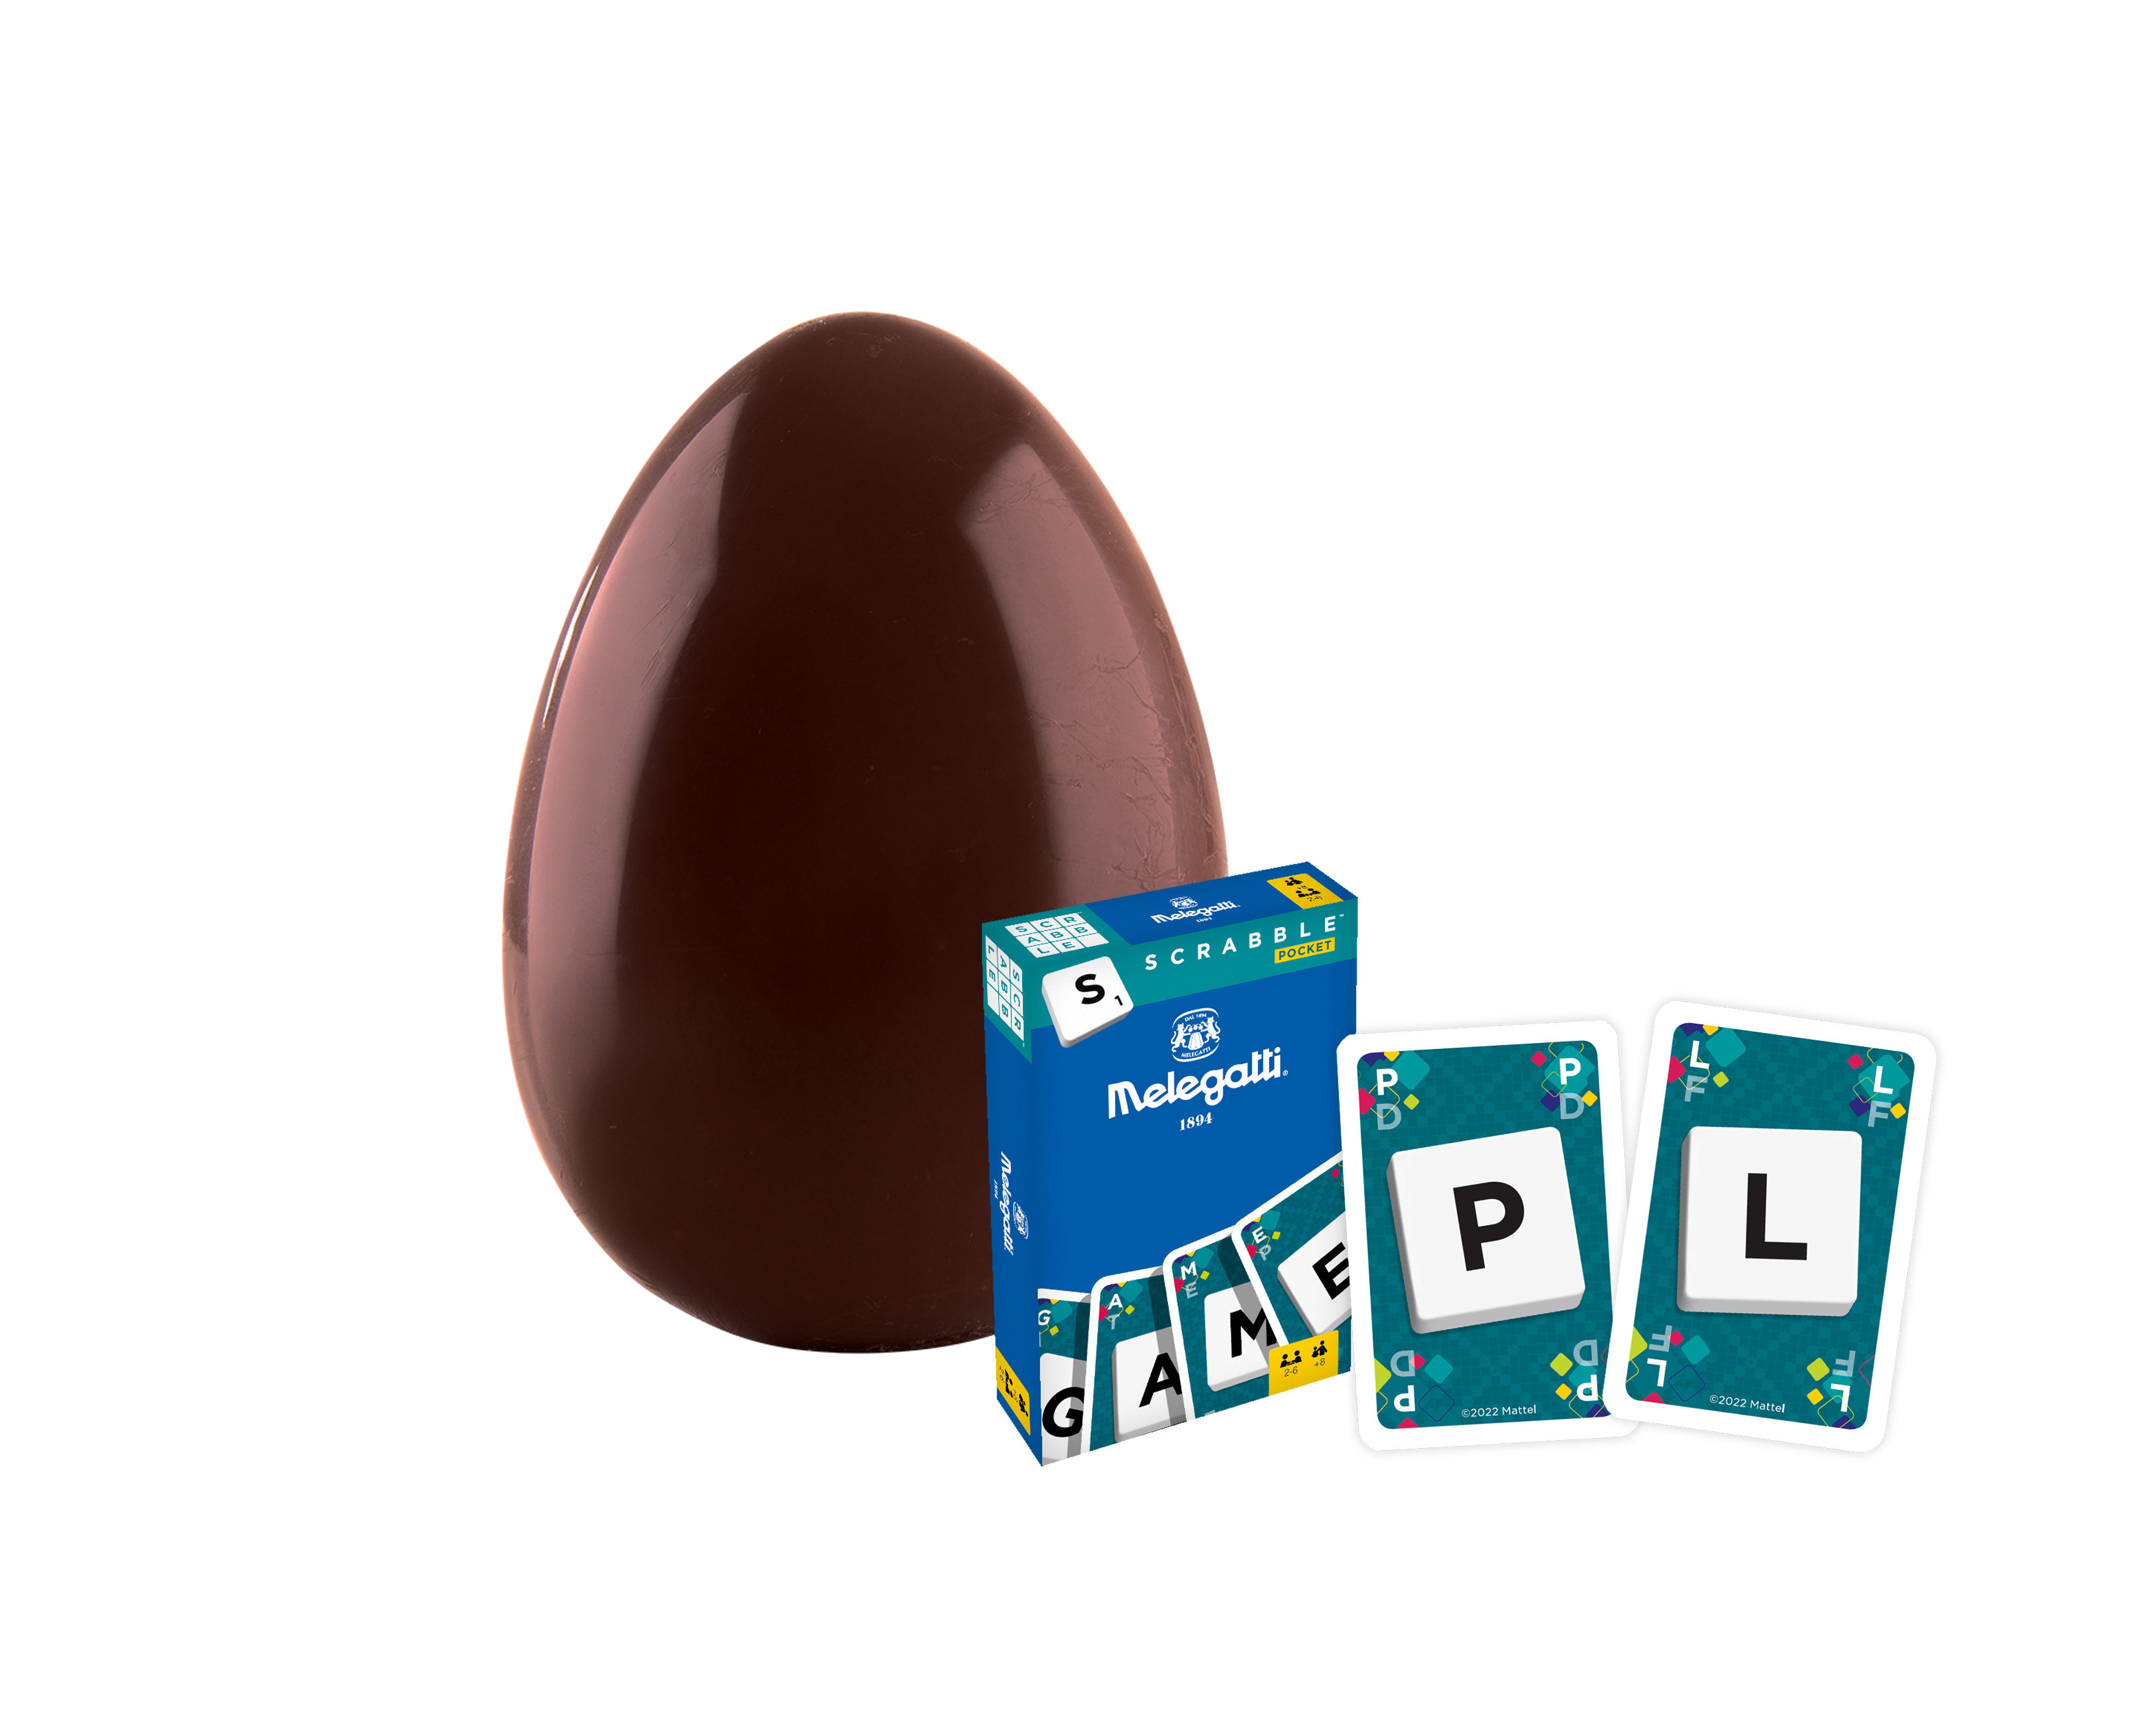 Dettaglio Dark Chocolate Egg “SCRABBLE”